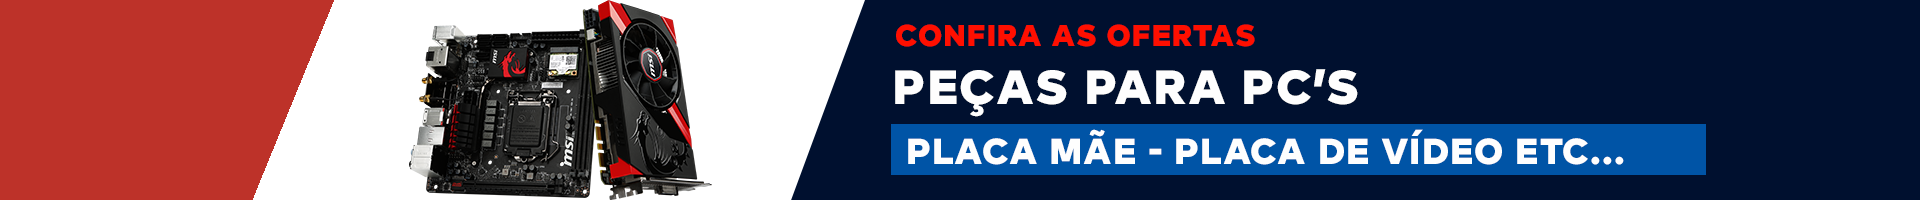 catalogo-pecas-pcs